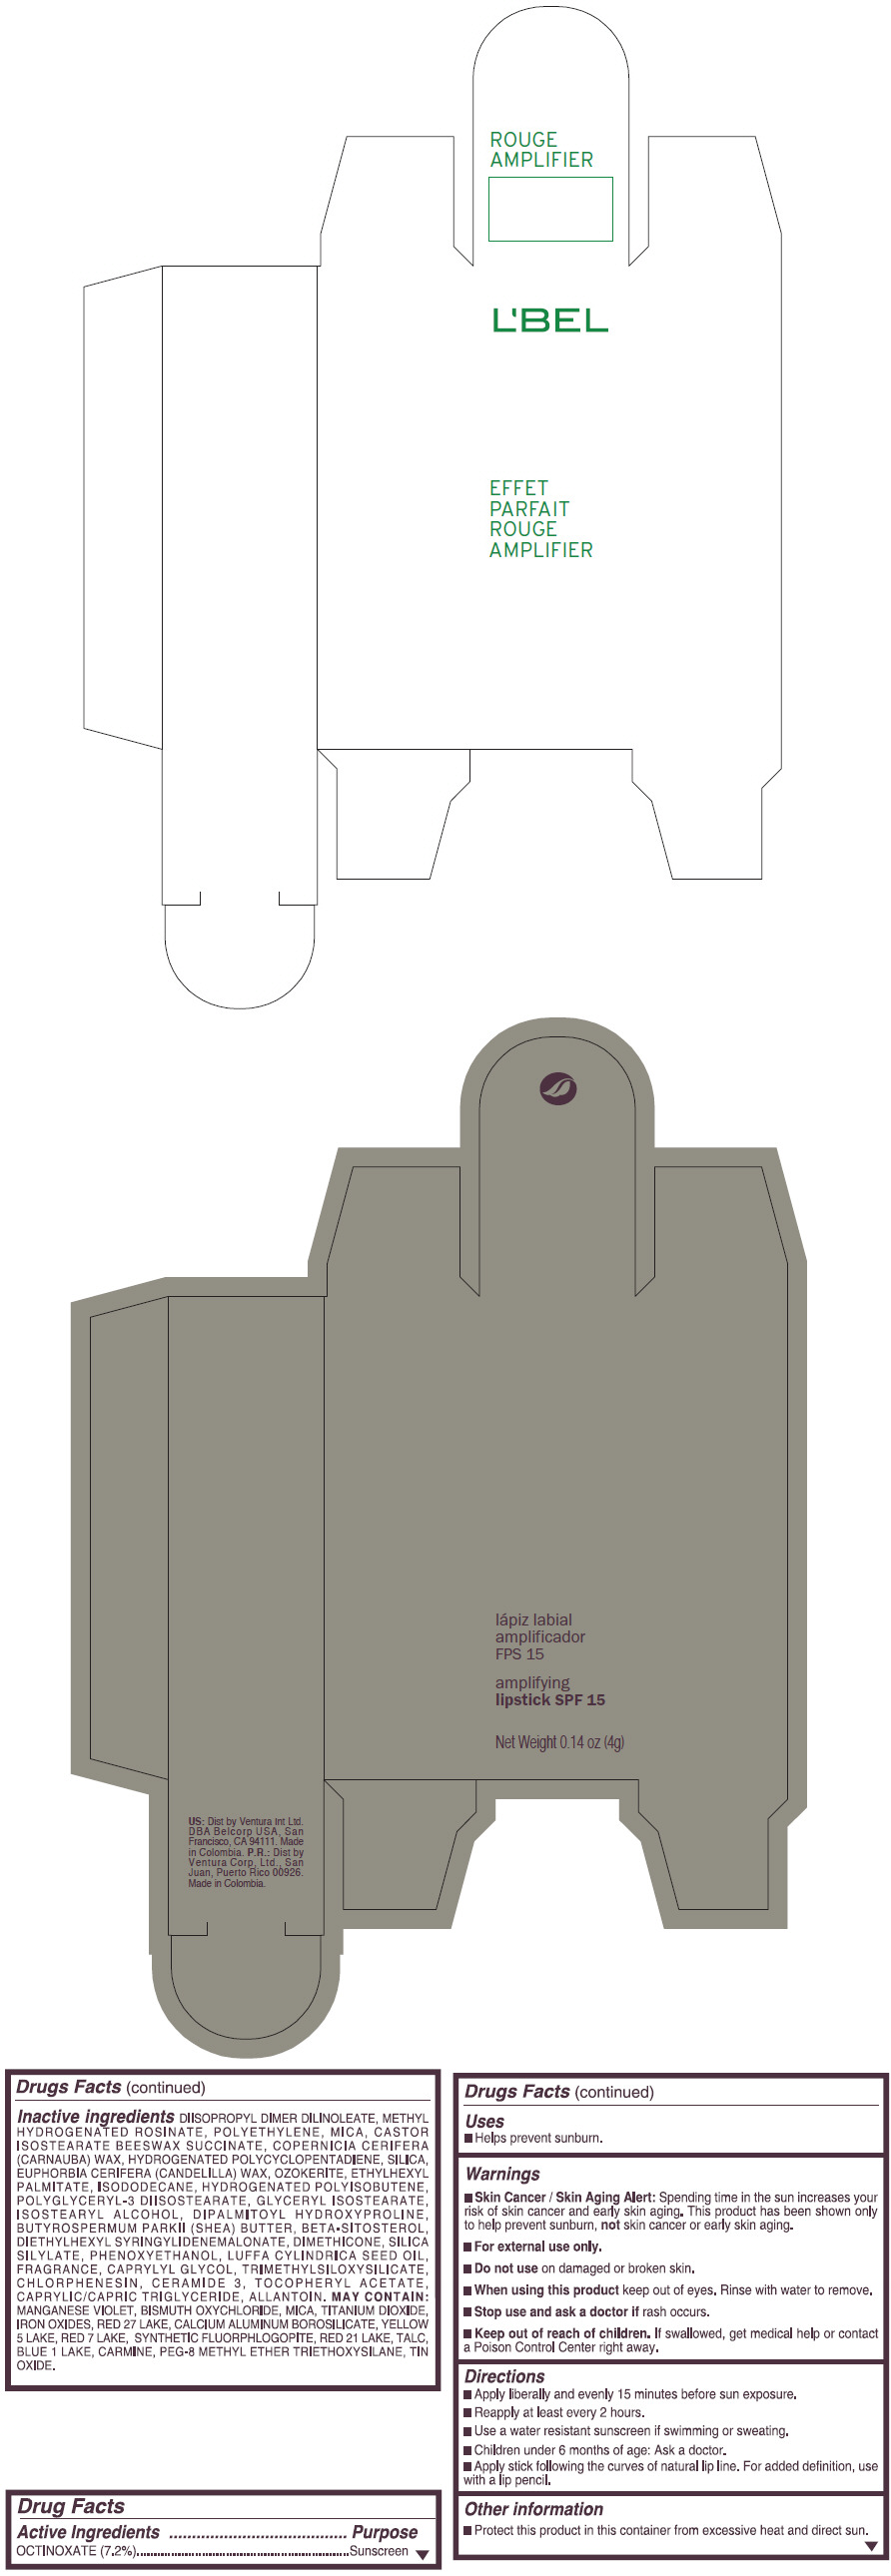 PRINCIPAL DISPLAY PANEL - 4 g Tube Box - (CORAL MAXIMUM) - ORANGE